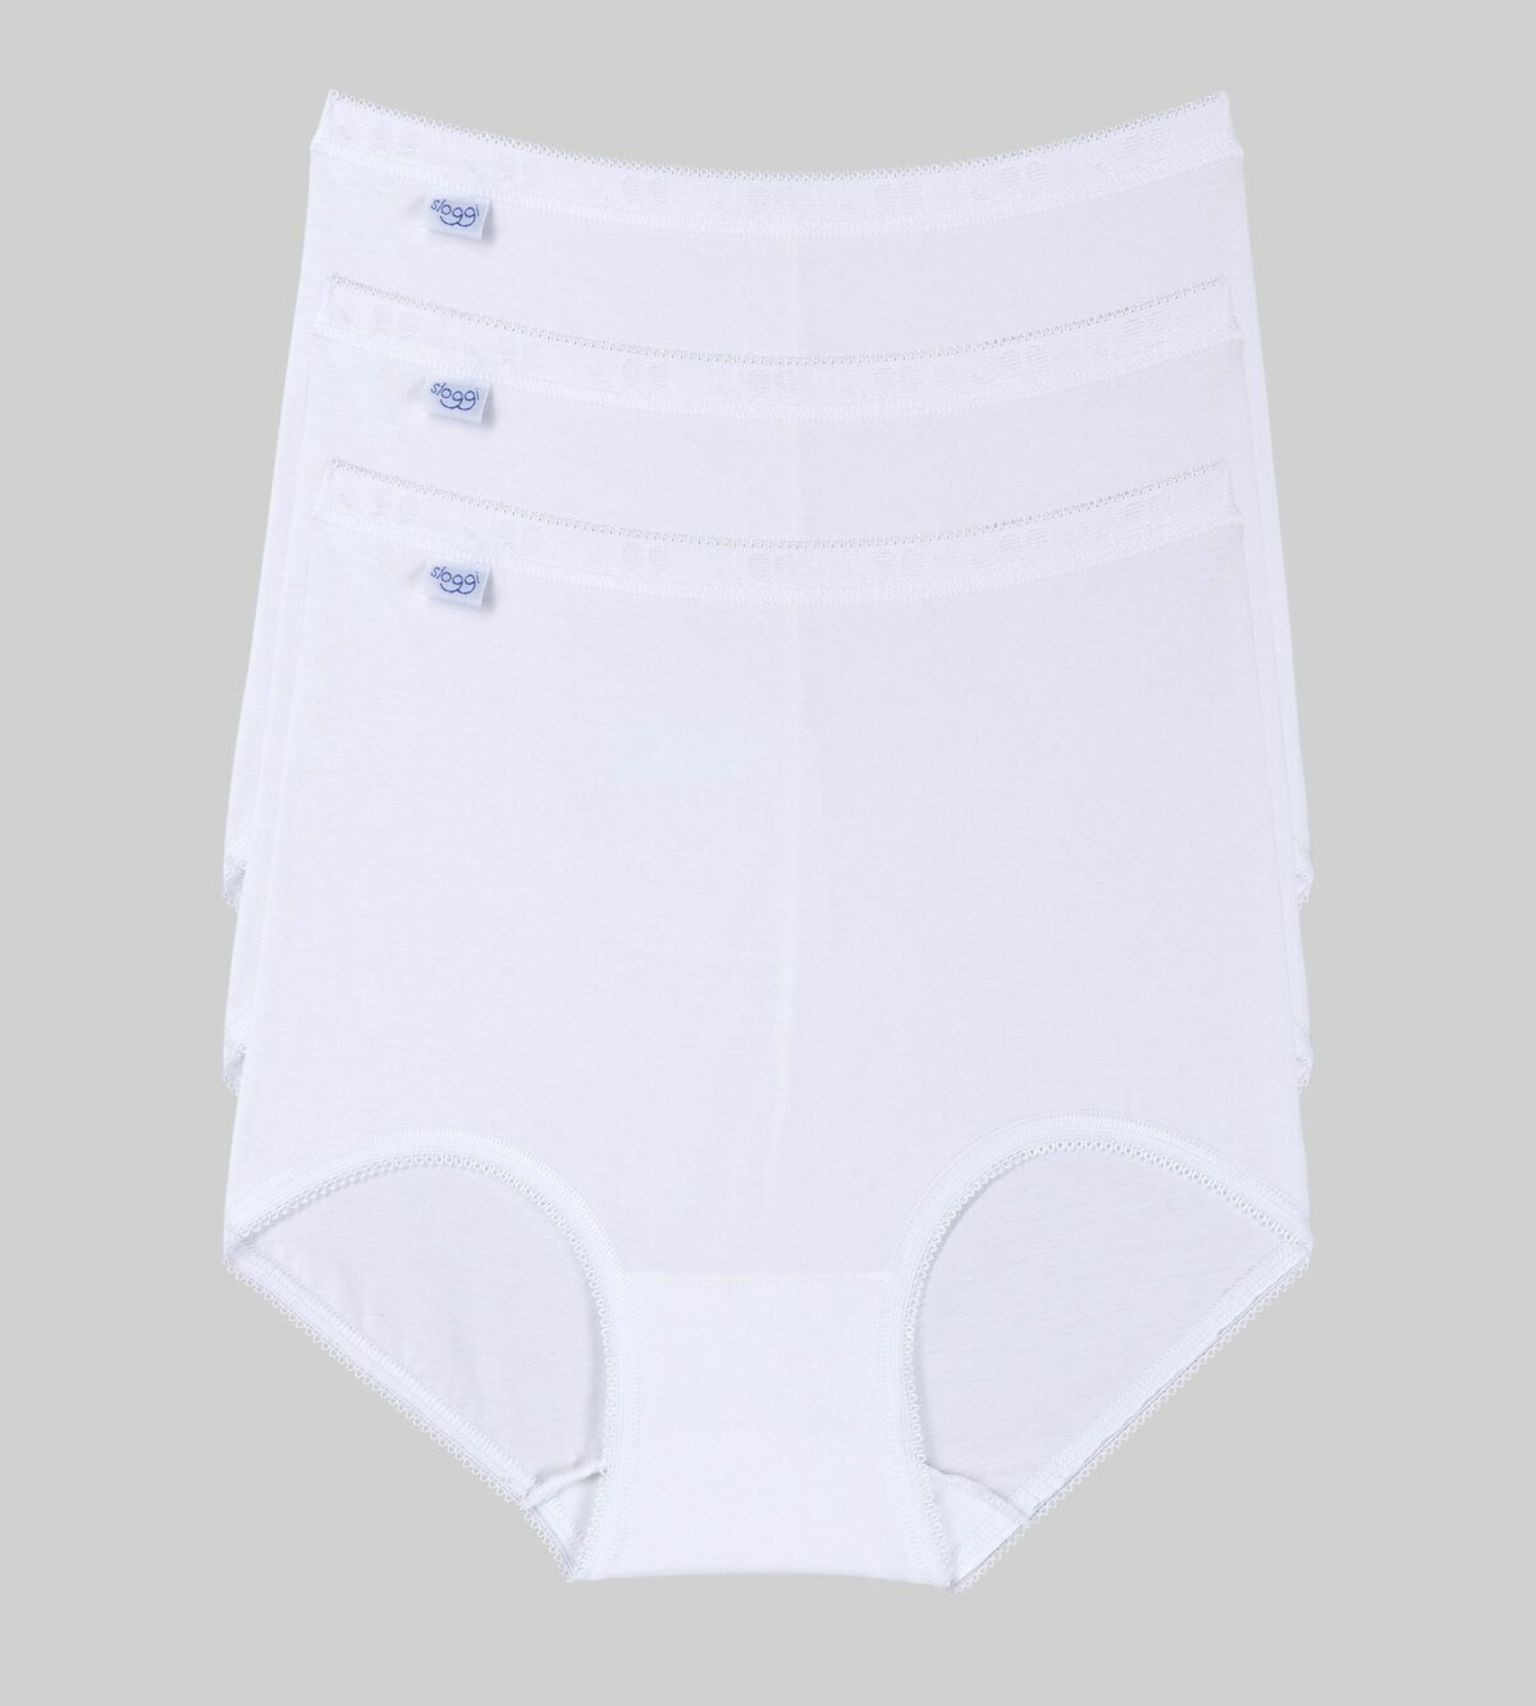 Dámské kalhotky loggi Basic+ Maxi 3P bílé WHITE 54